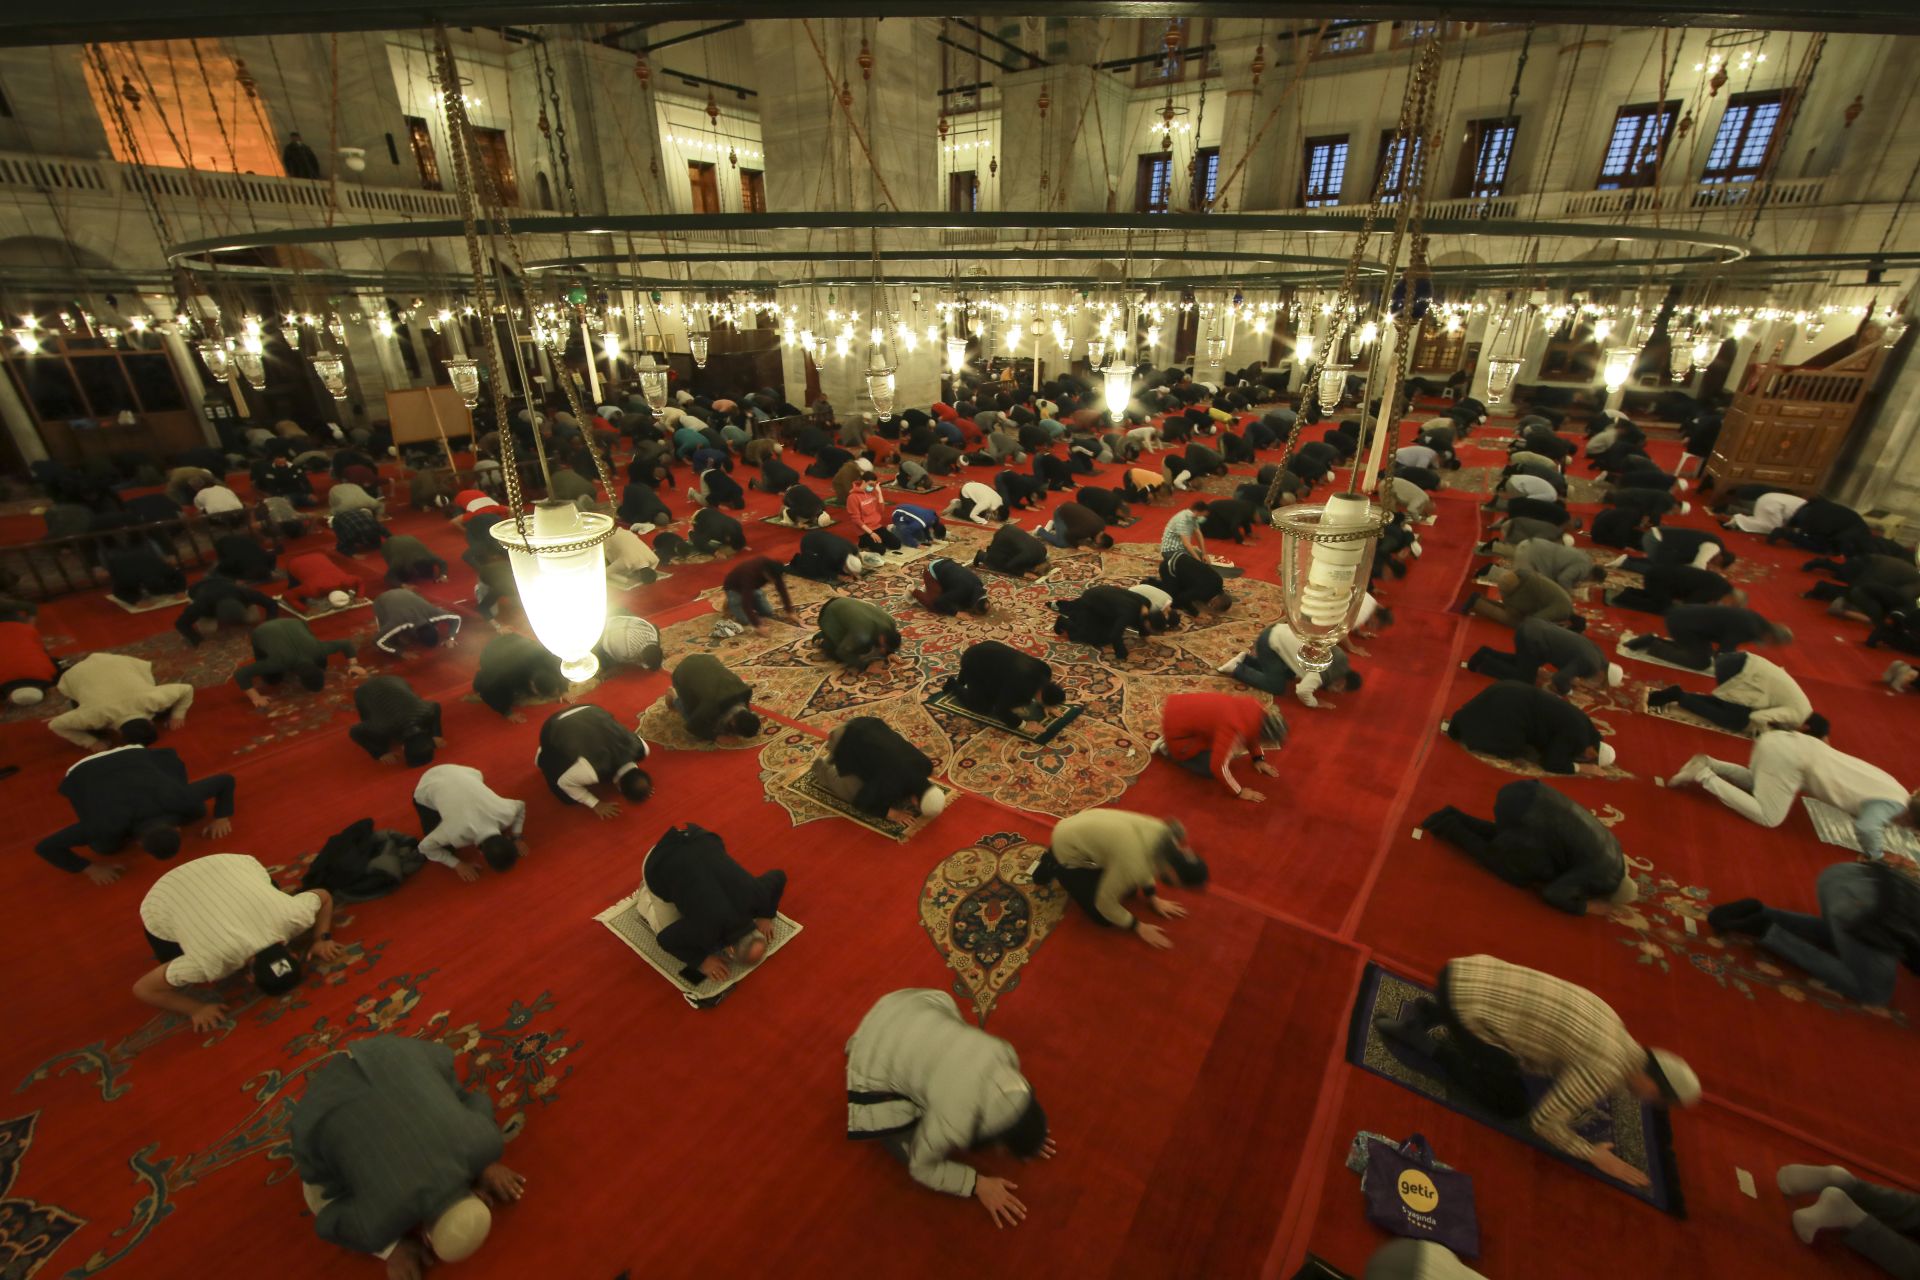 Мюсюлманите отправят молитви пред джамията Фатих в Истанбул